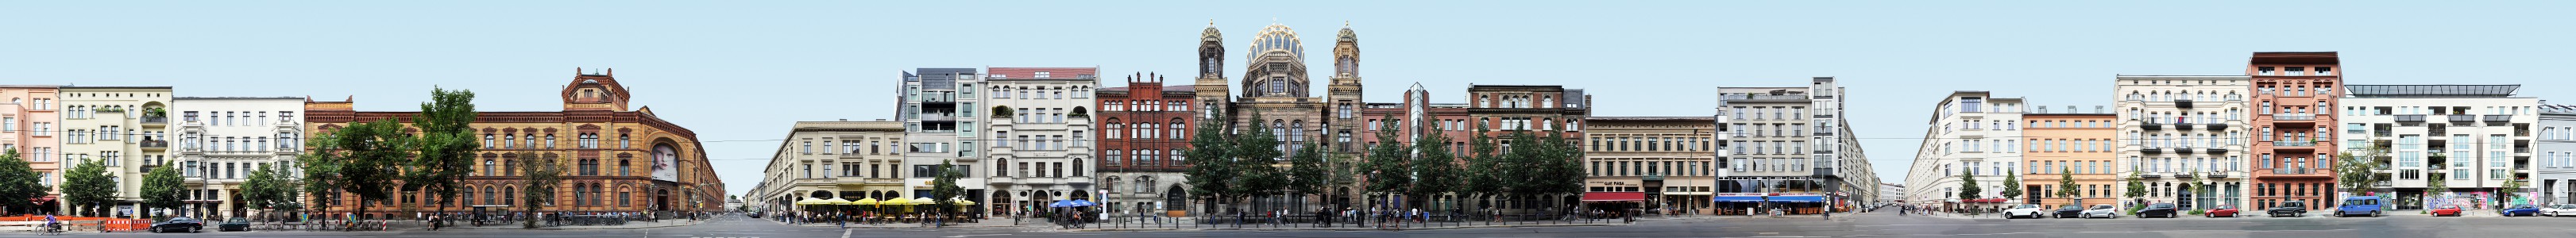 New Synagogue | Oranienburger Strasse